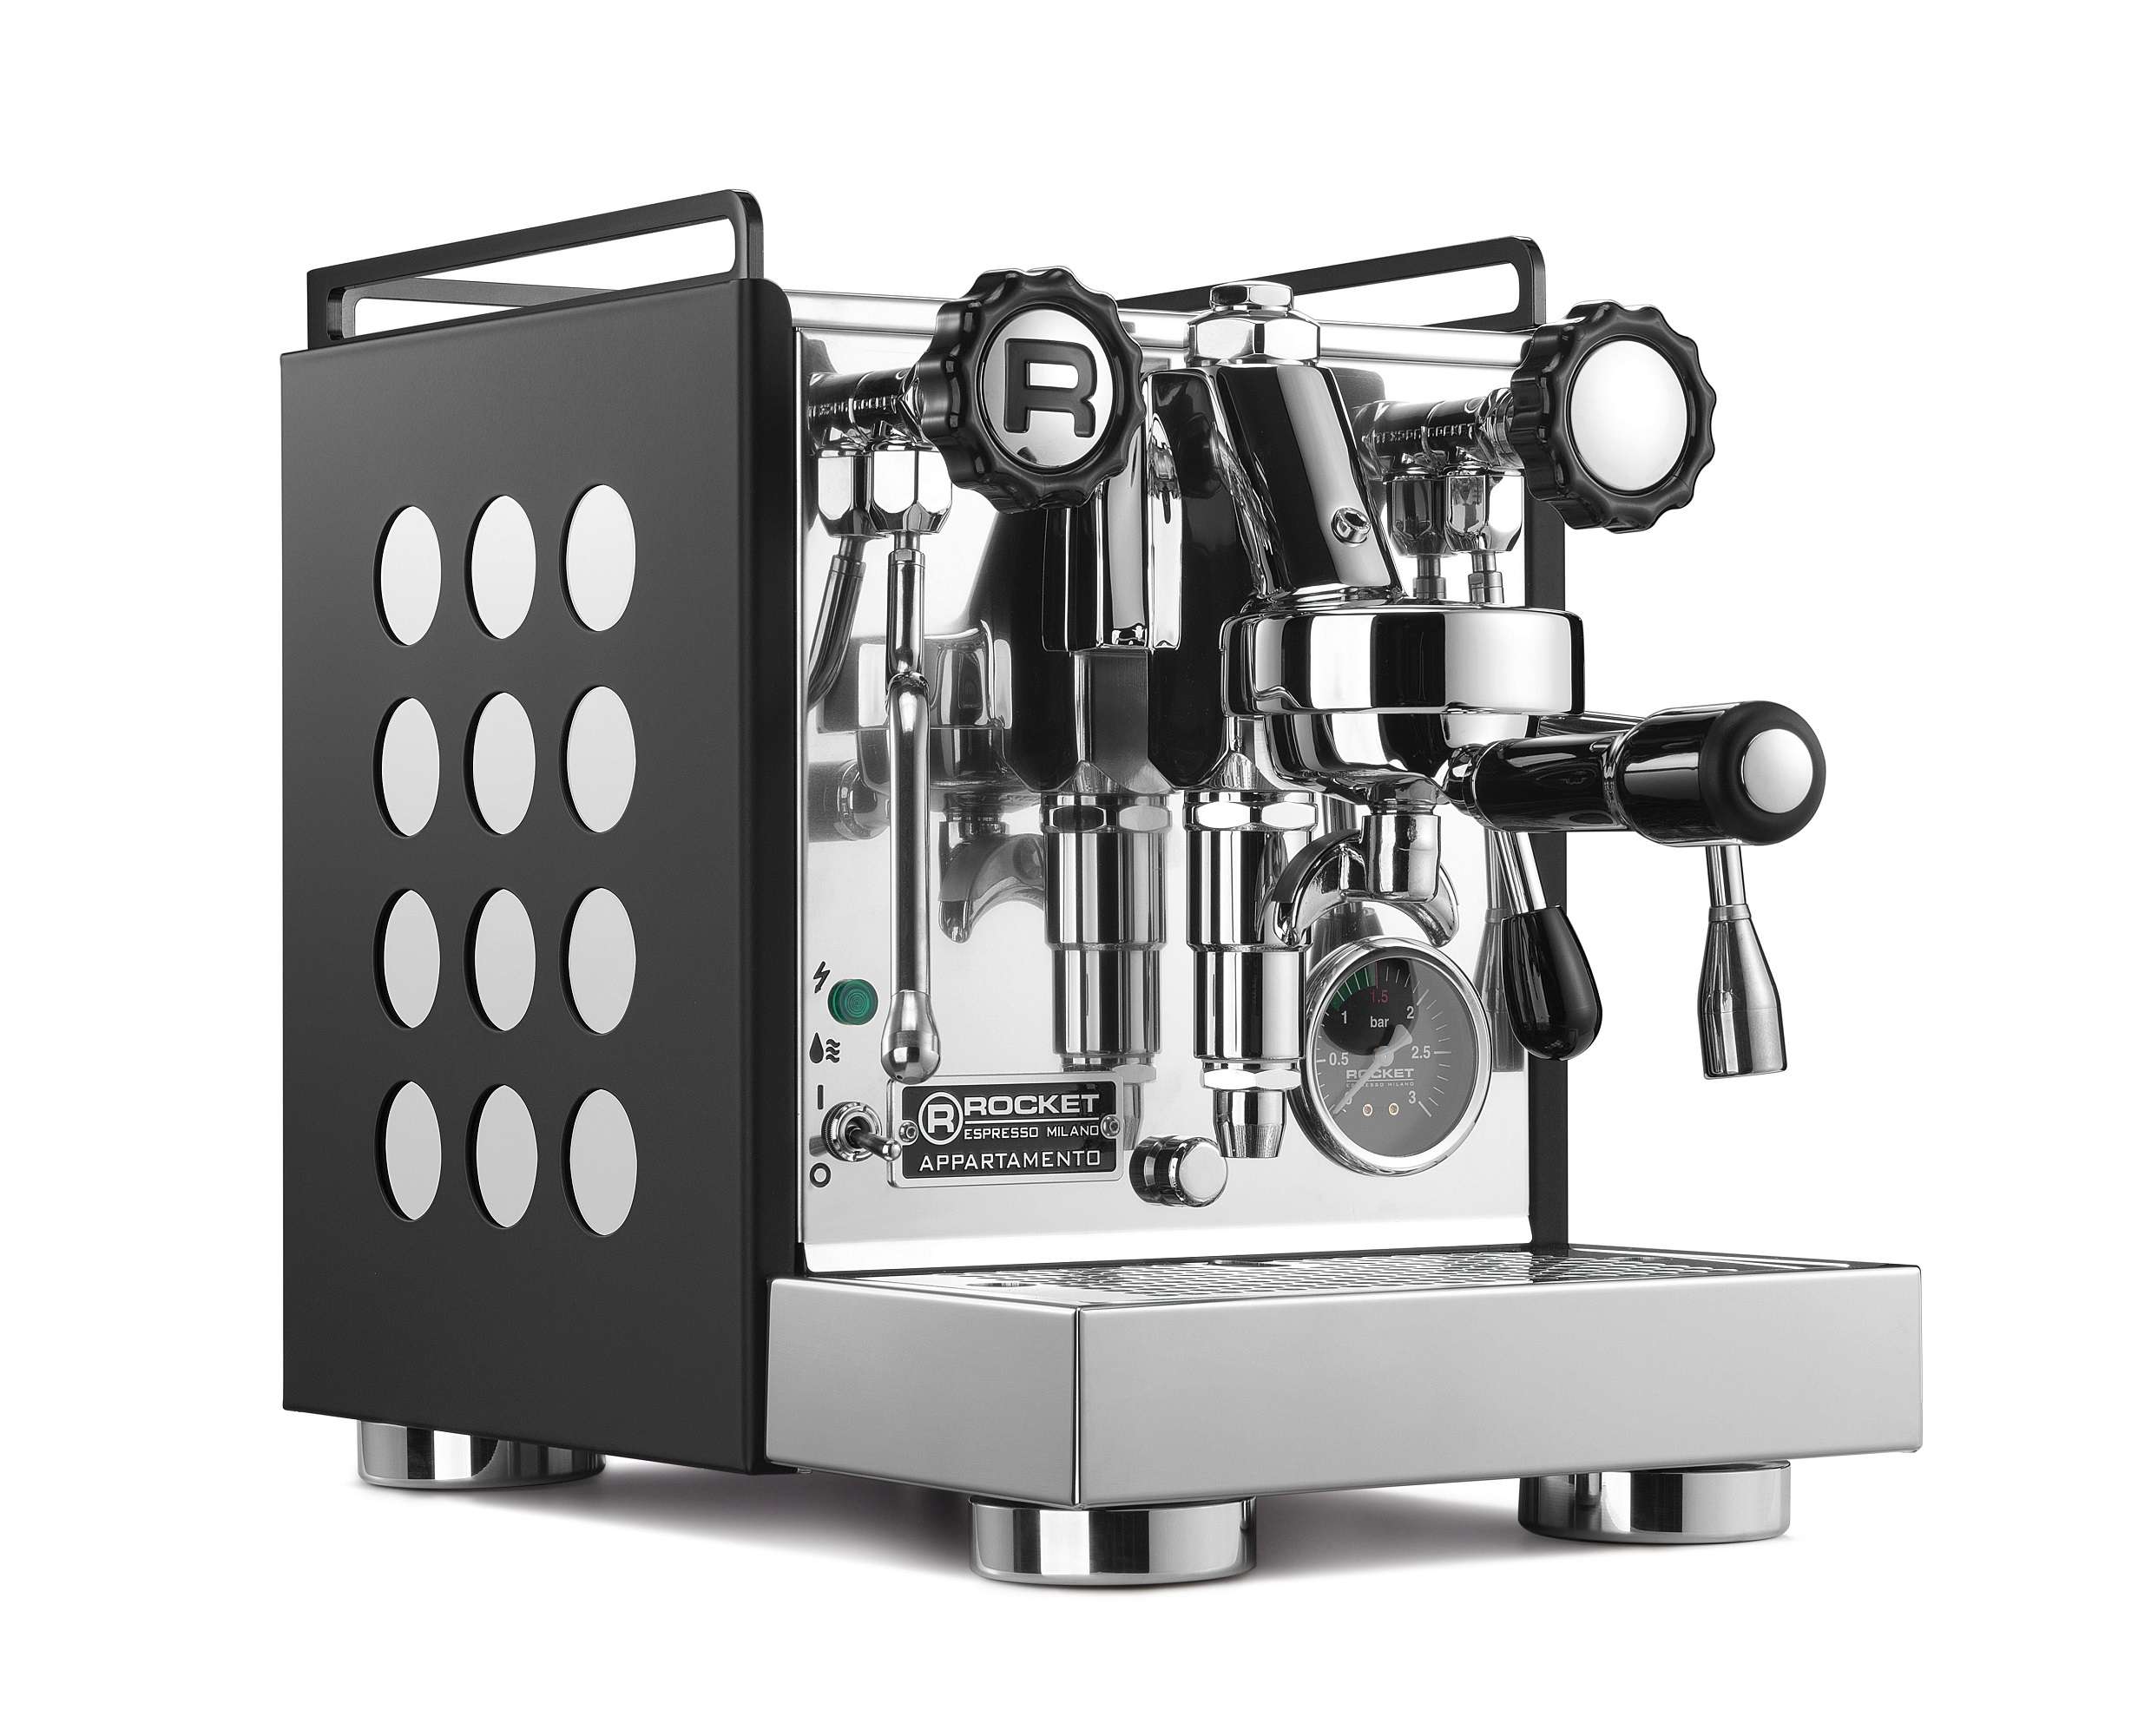 Rocket Appartamento Kompakte Siebträger Espressomaschine schwarz weiß